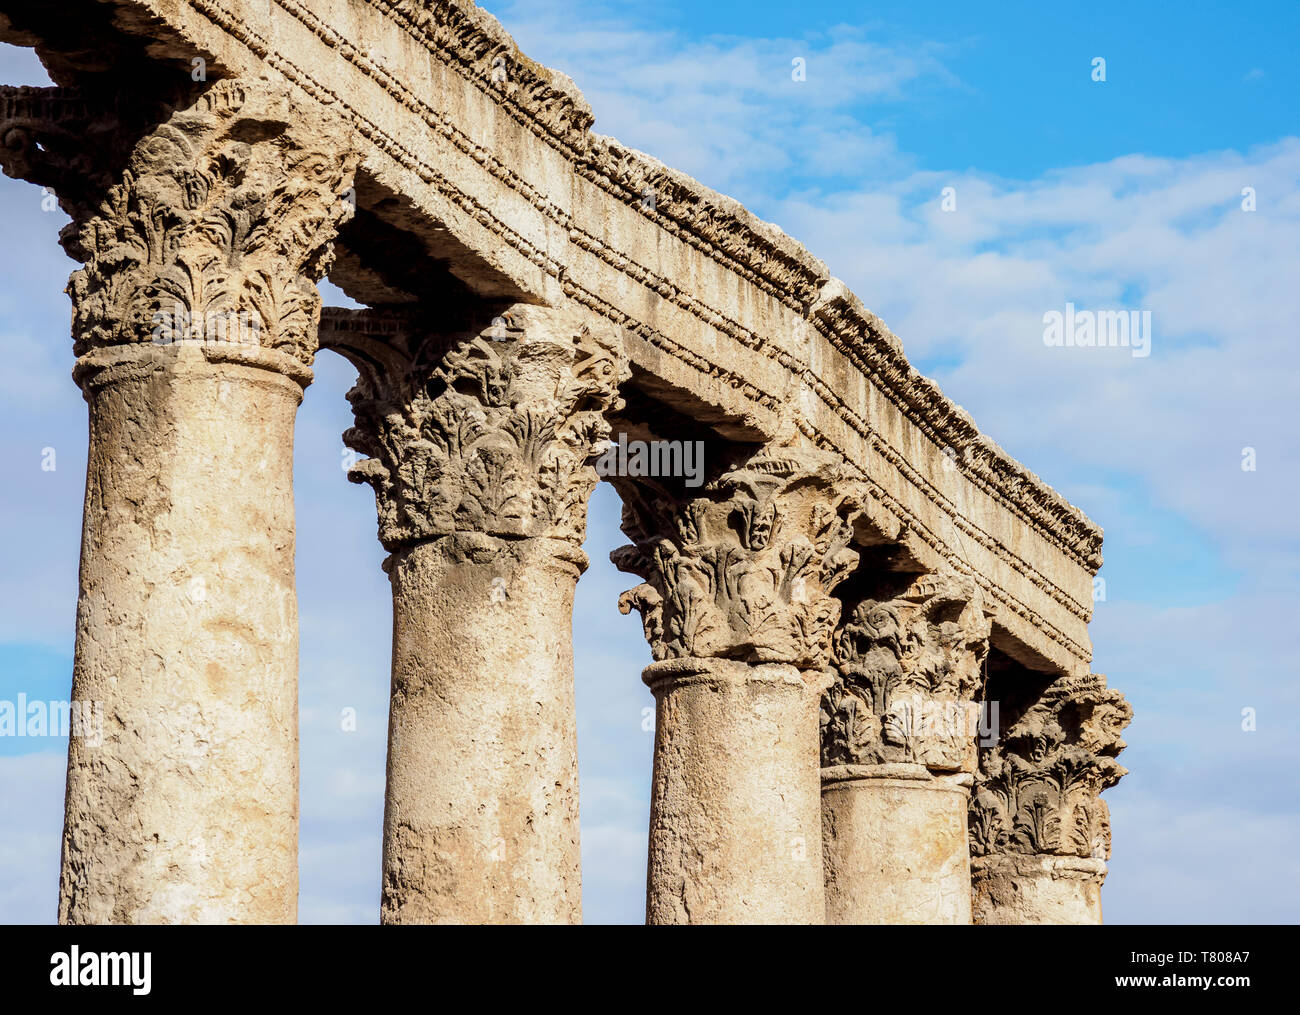 Ruinas Romanas, La Plaza Hachemita, Ammán, la Gobernación de Ammán, Jordania, Oriente Medio Foto de stock